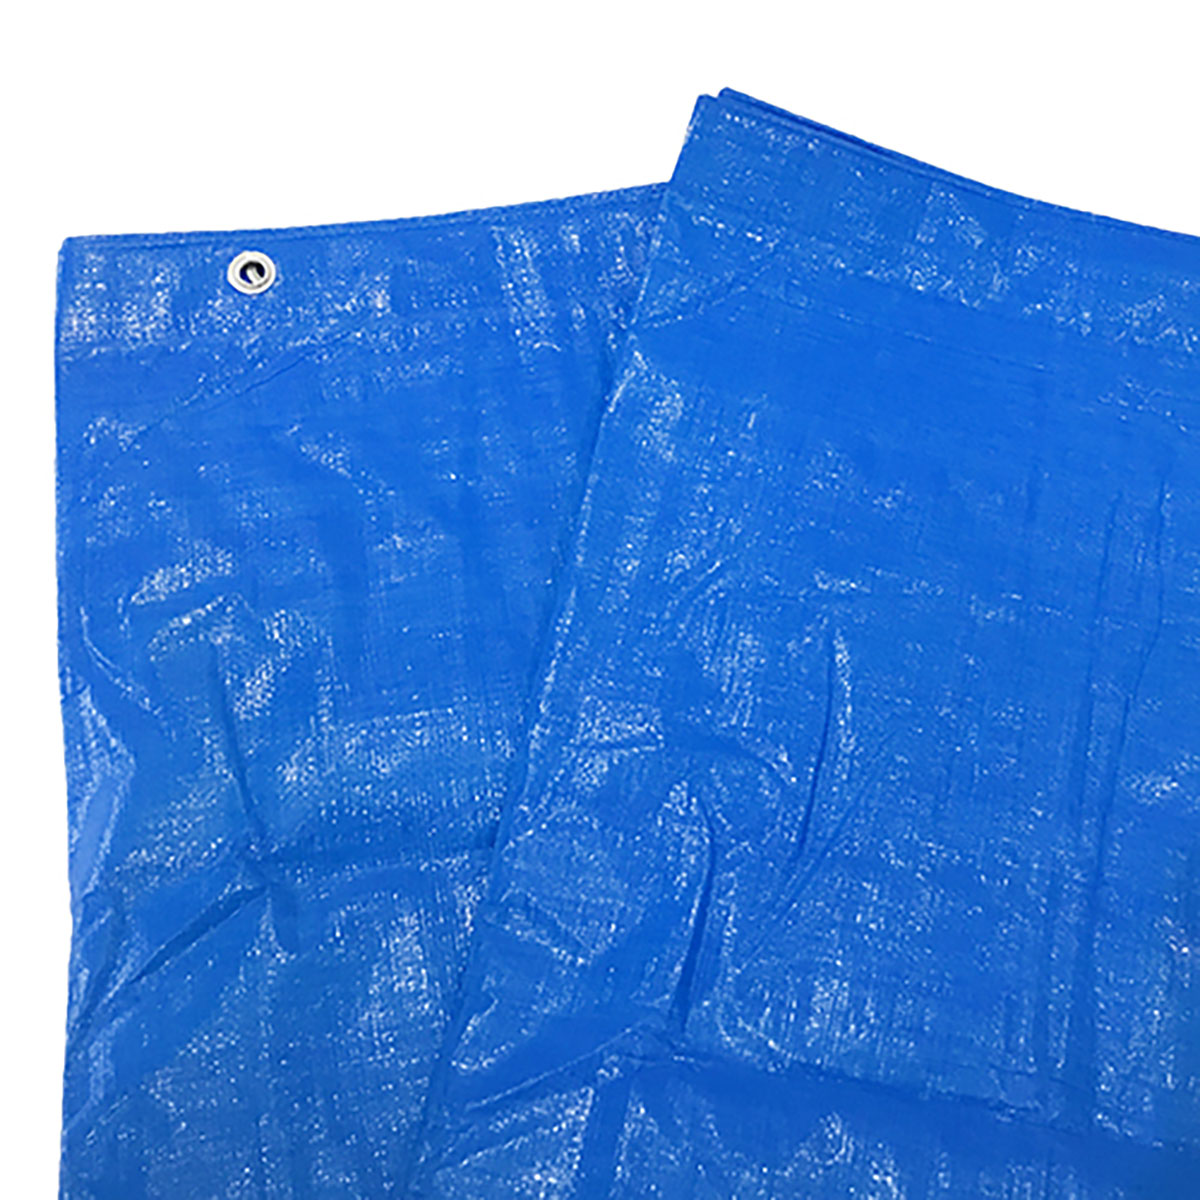 ブルーシート 巾約5.2×長さ約5.2m #3000